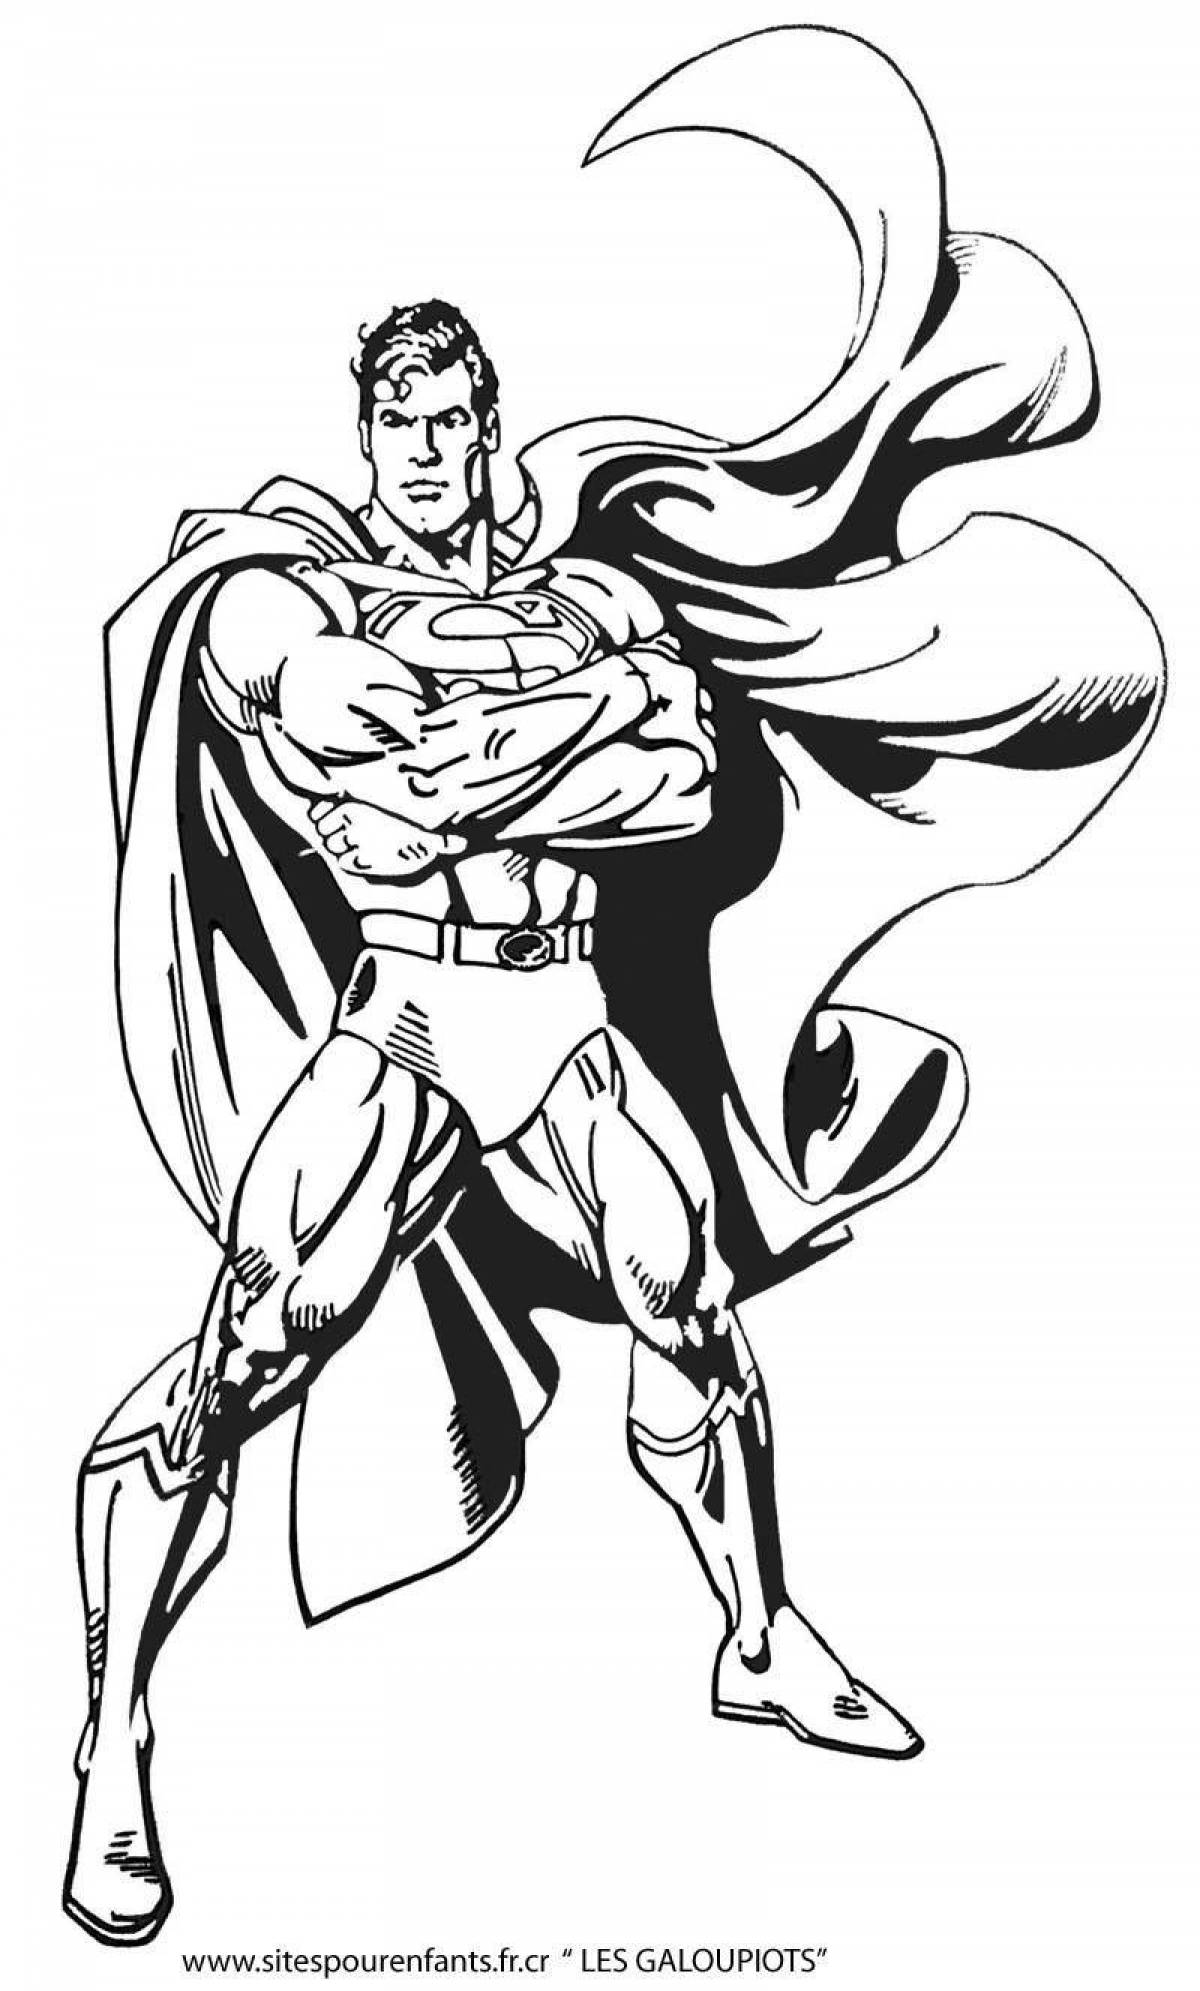 Elegant superman and batman coloring book